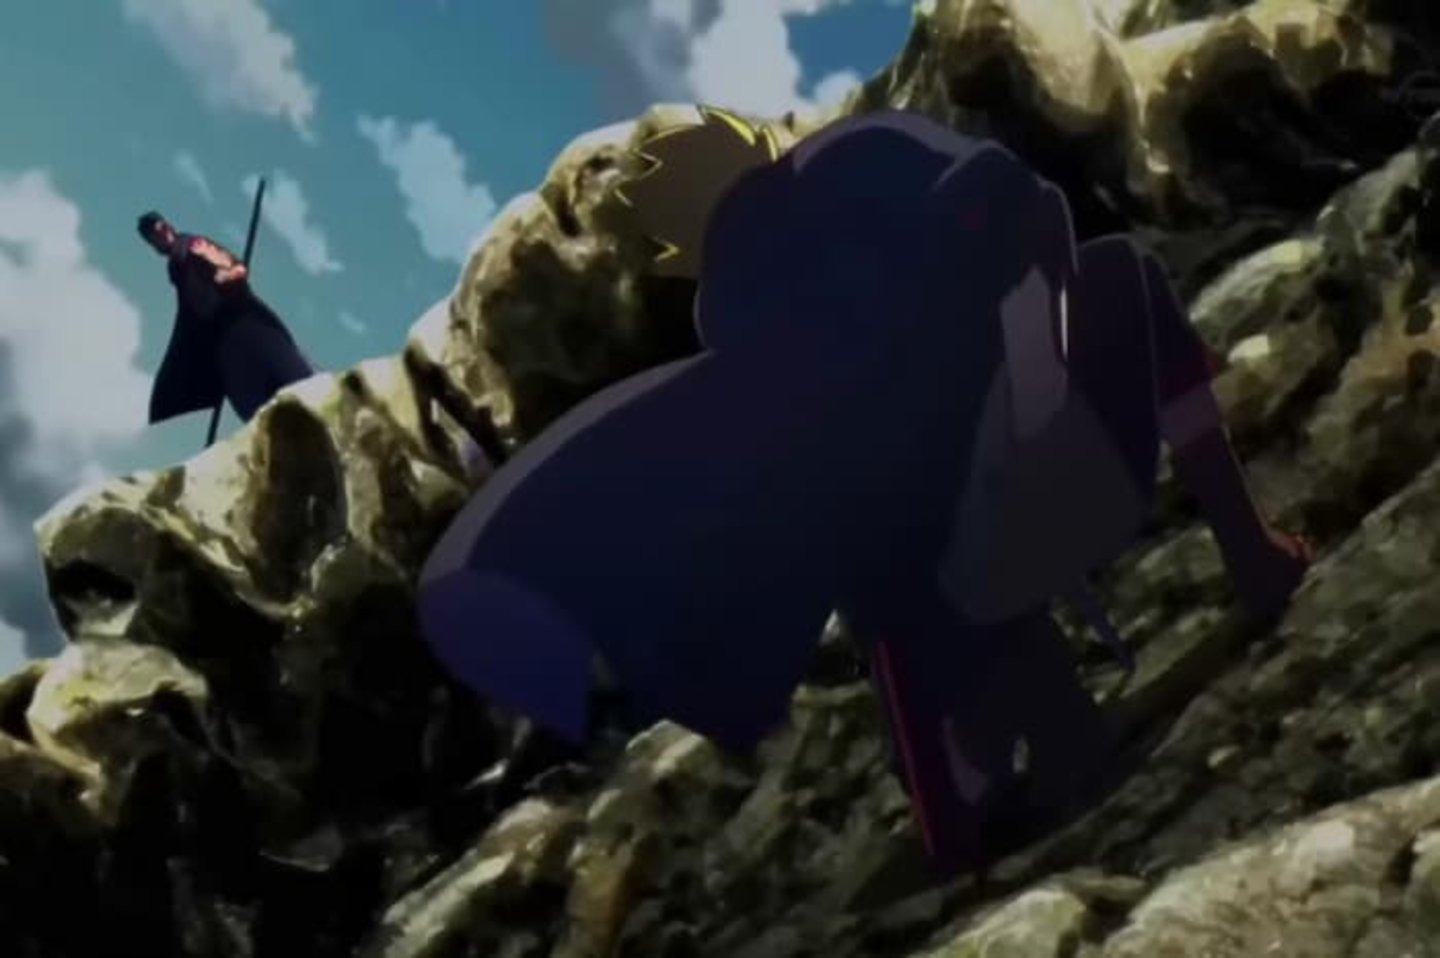 Escena del enfrentamiento de Kawaki y Boruto, en los primeros cortes del primer episodio de Boruto: Naruto Next Generations